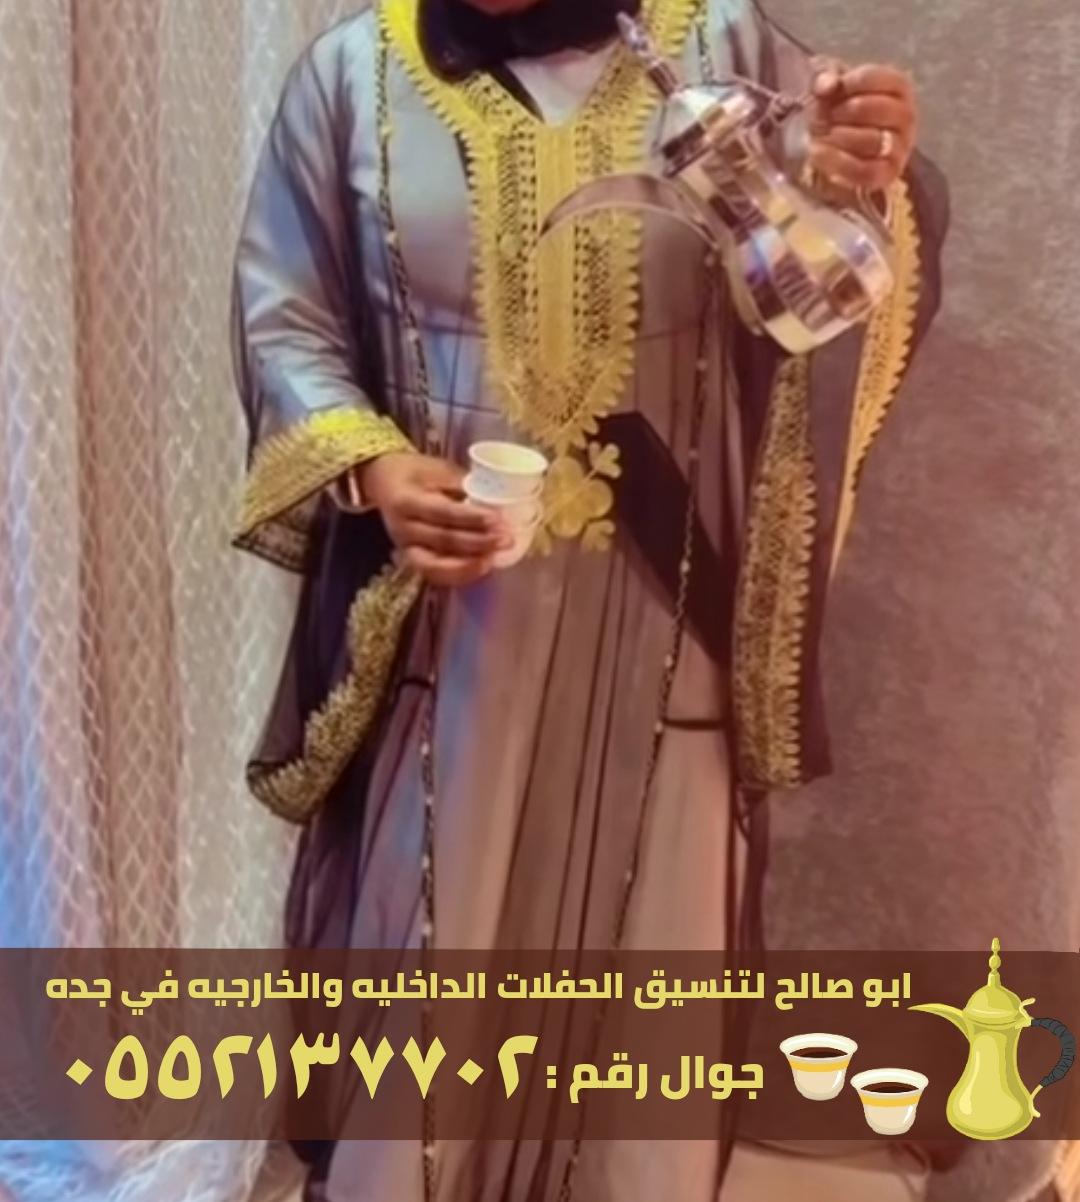 ضيافة قهوة و شاي في جدة,0552137702 182676615